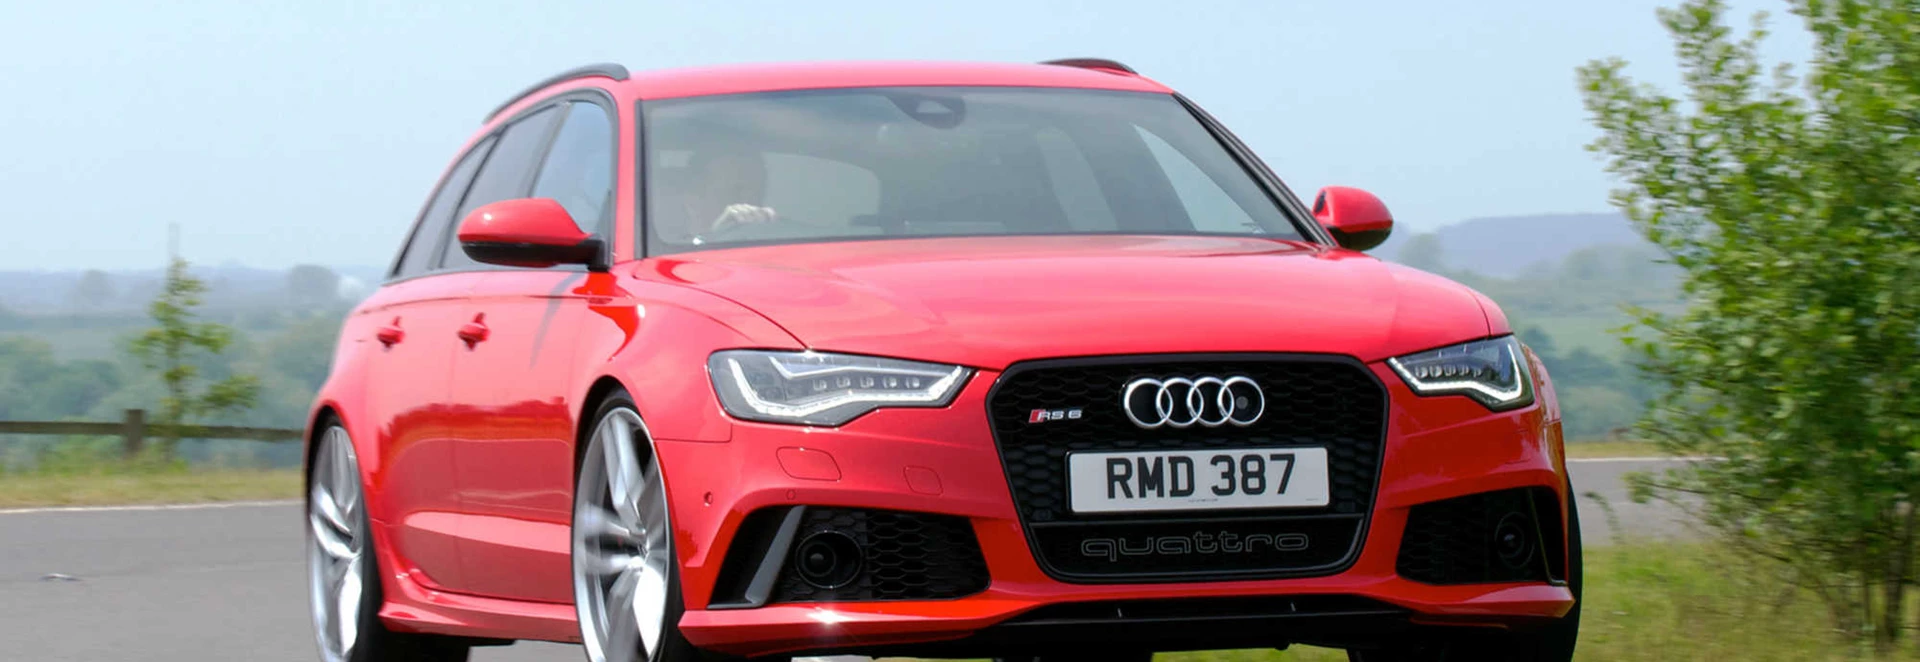 Audi RS 6 Avant estate review 